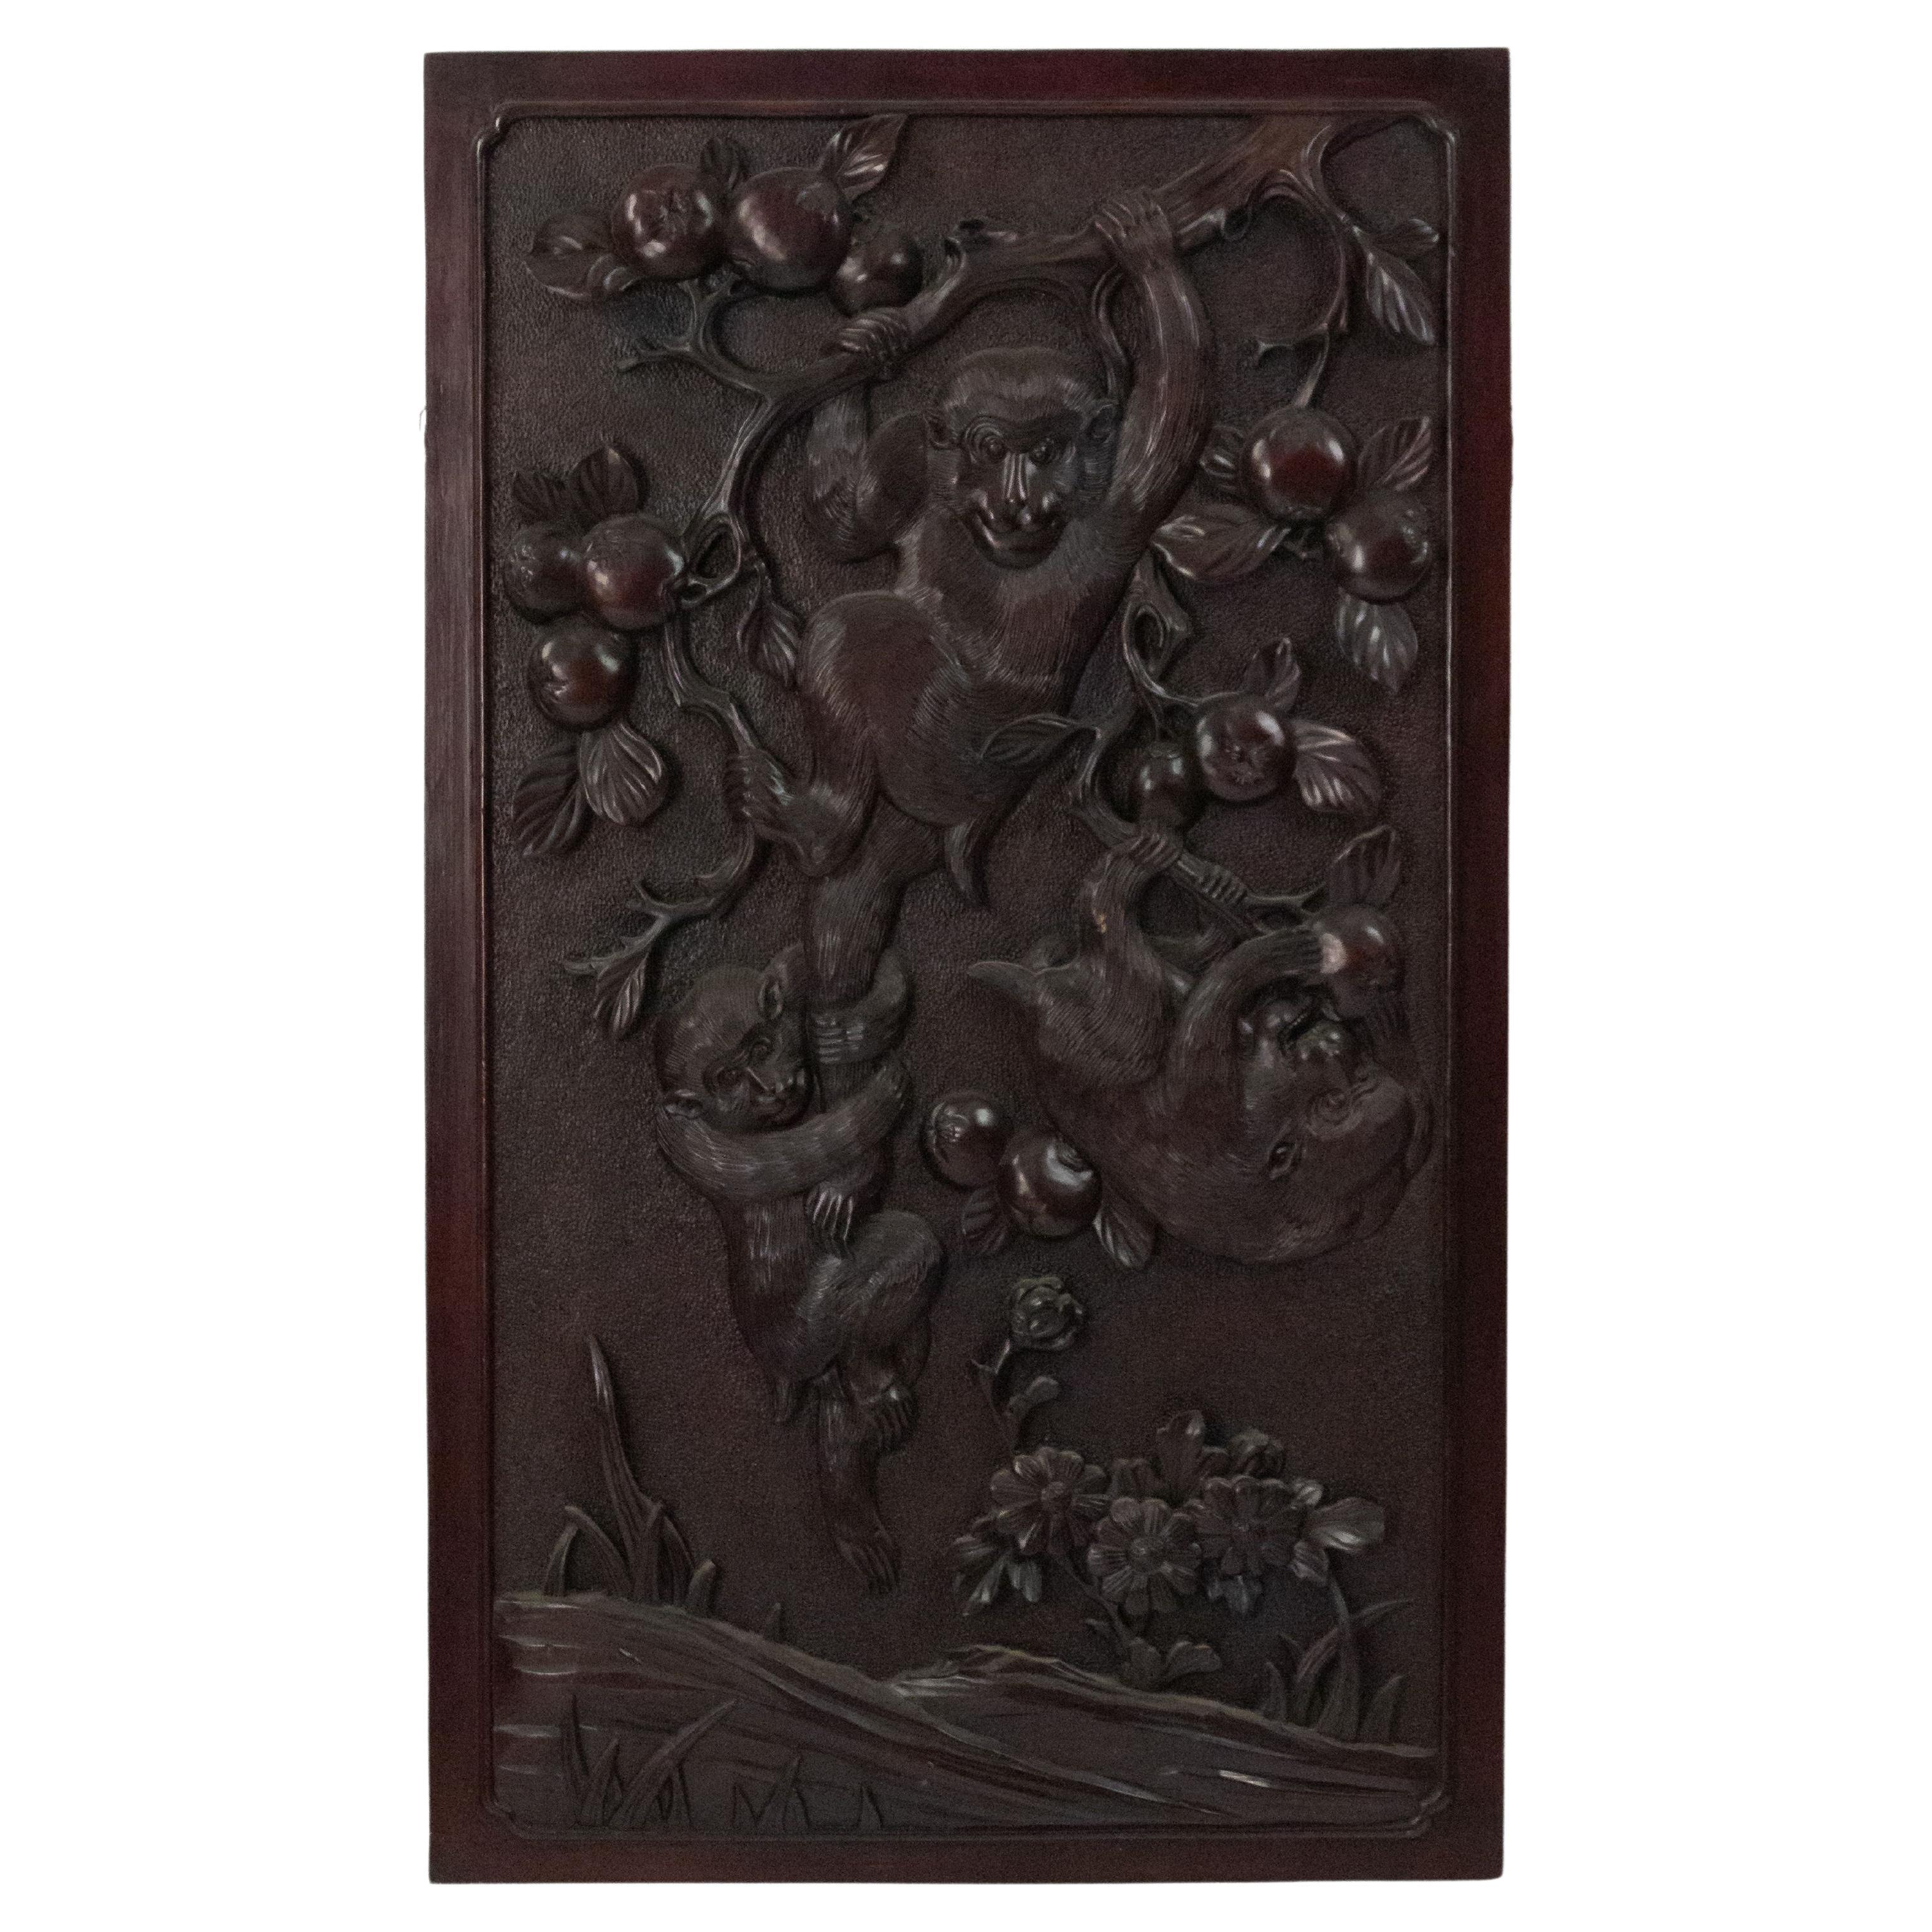 Chinesische geschnitzte szenische Affen-Wandtafel aus dem 19. Jahrhundert